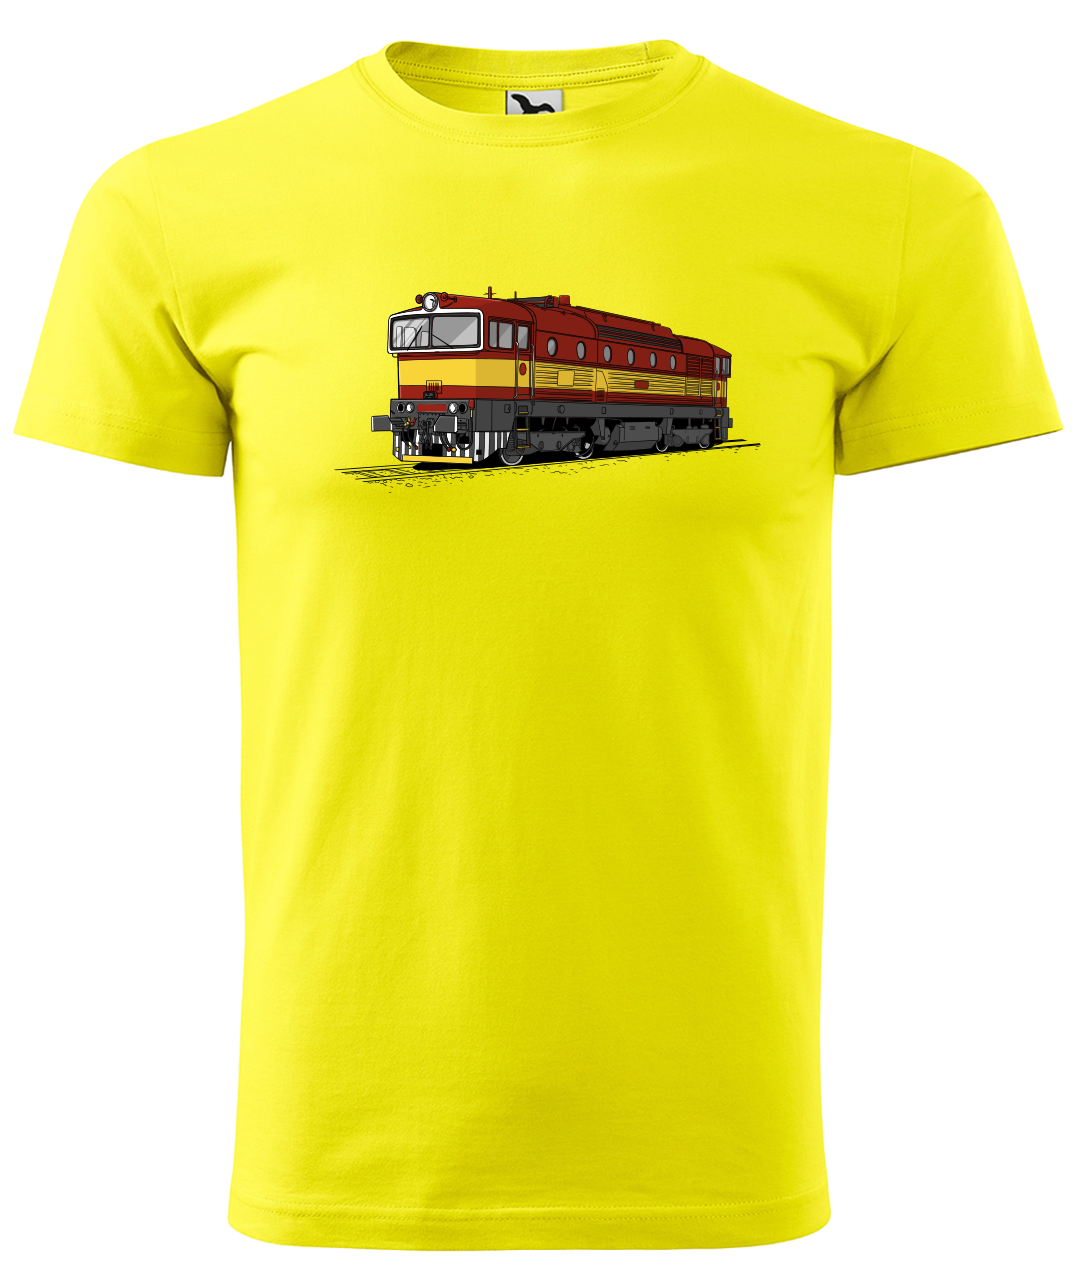 Dětské tričko s vlakem - Barevná lokomotiva BREJLOVEC Velikost: 6 let / 122 cm, Barva: Žlutá (04)